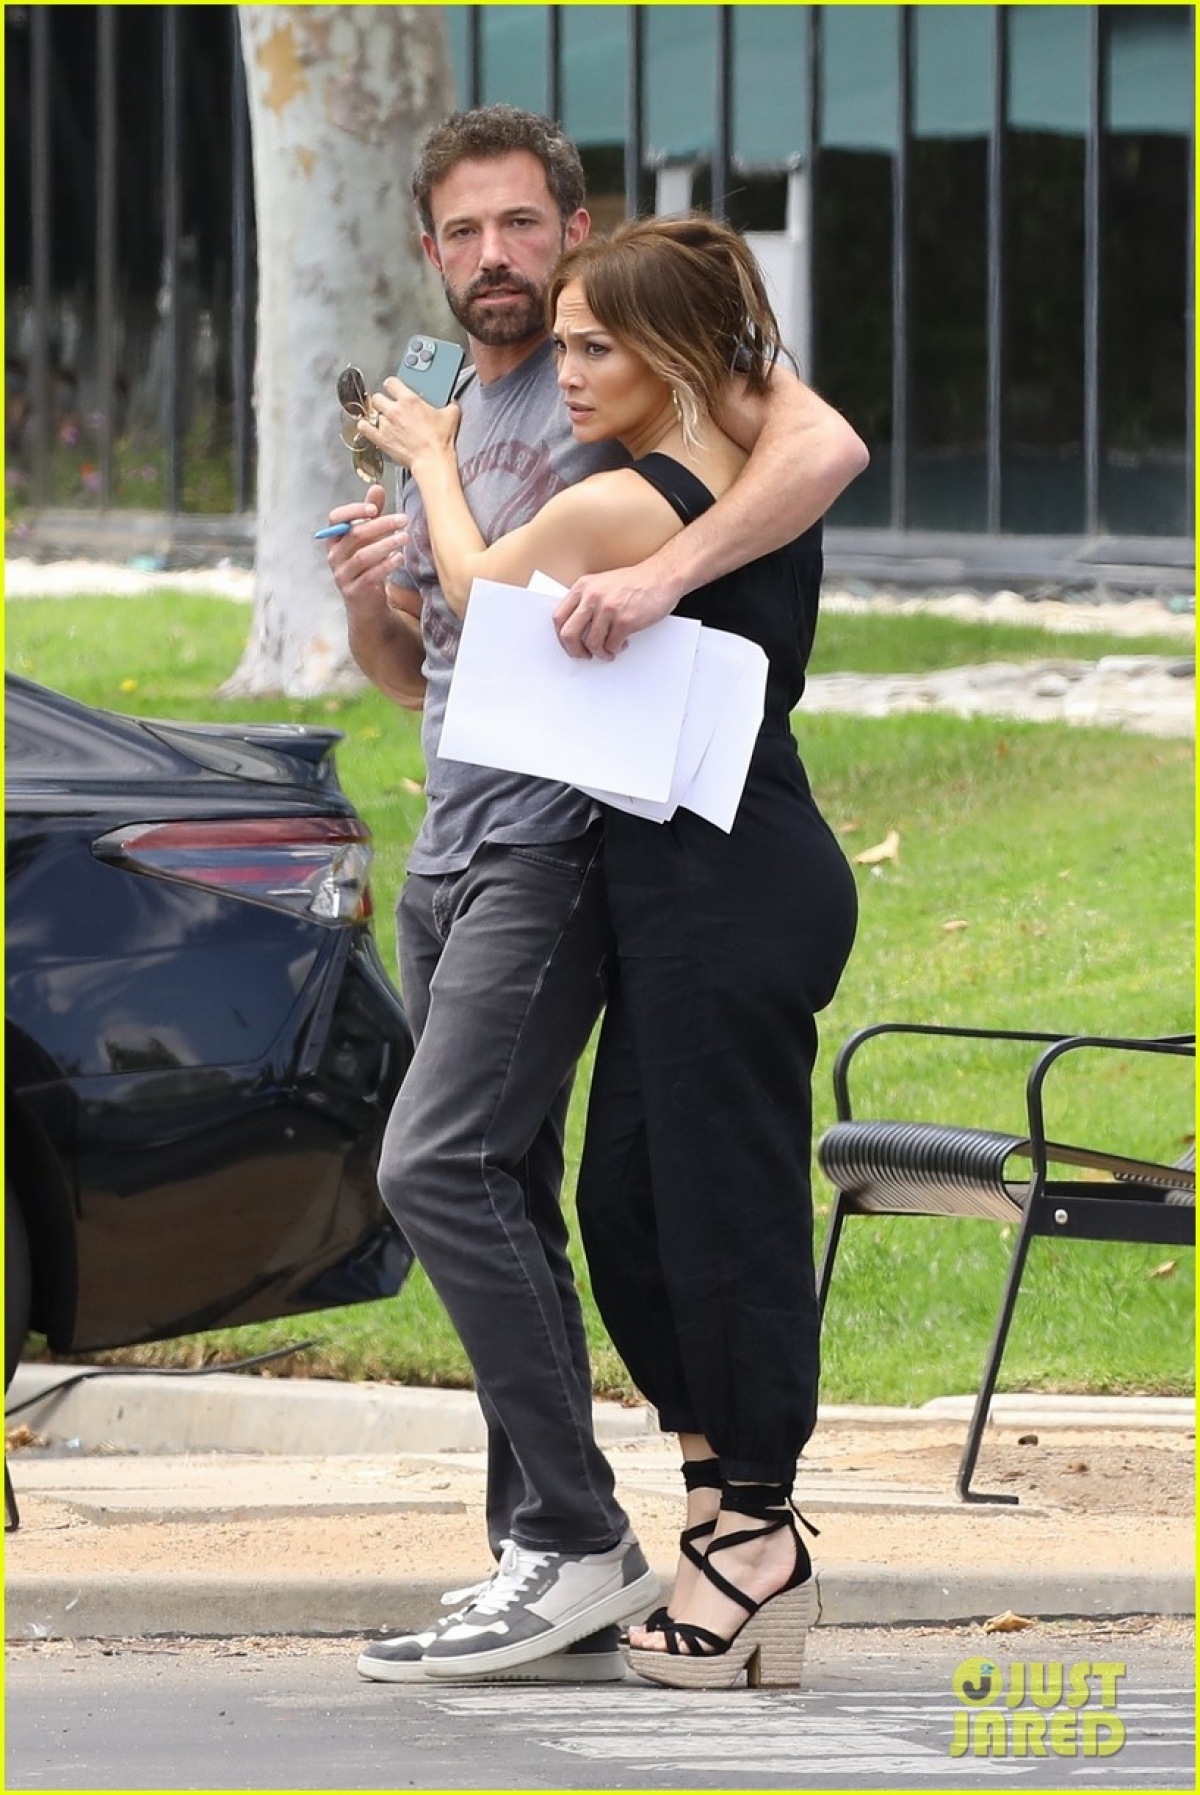 Jennifer Lopez và bạn trai khóa môi ngọt ngào trên phim trường - Ảnh 4.